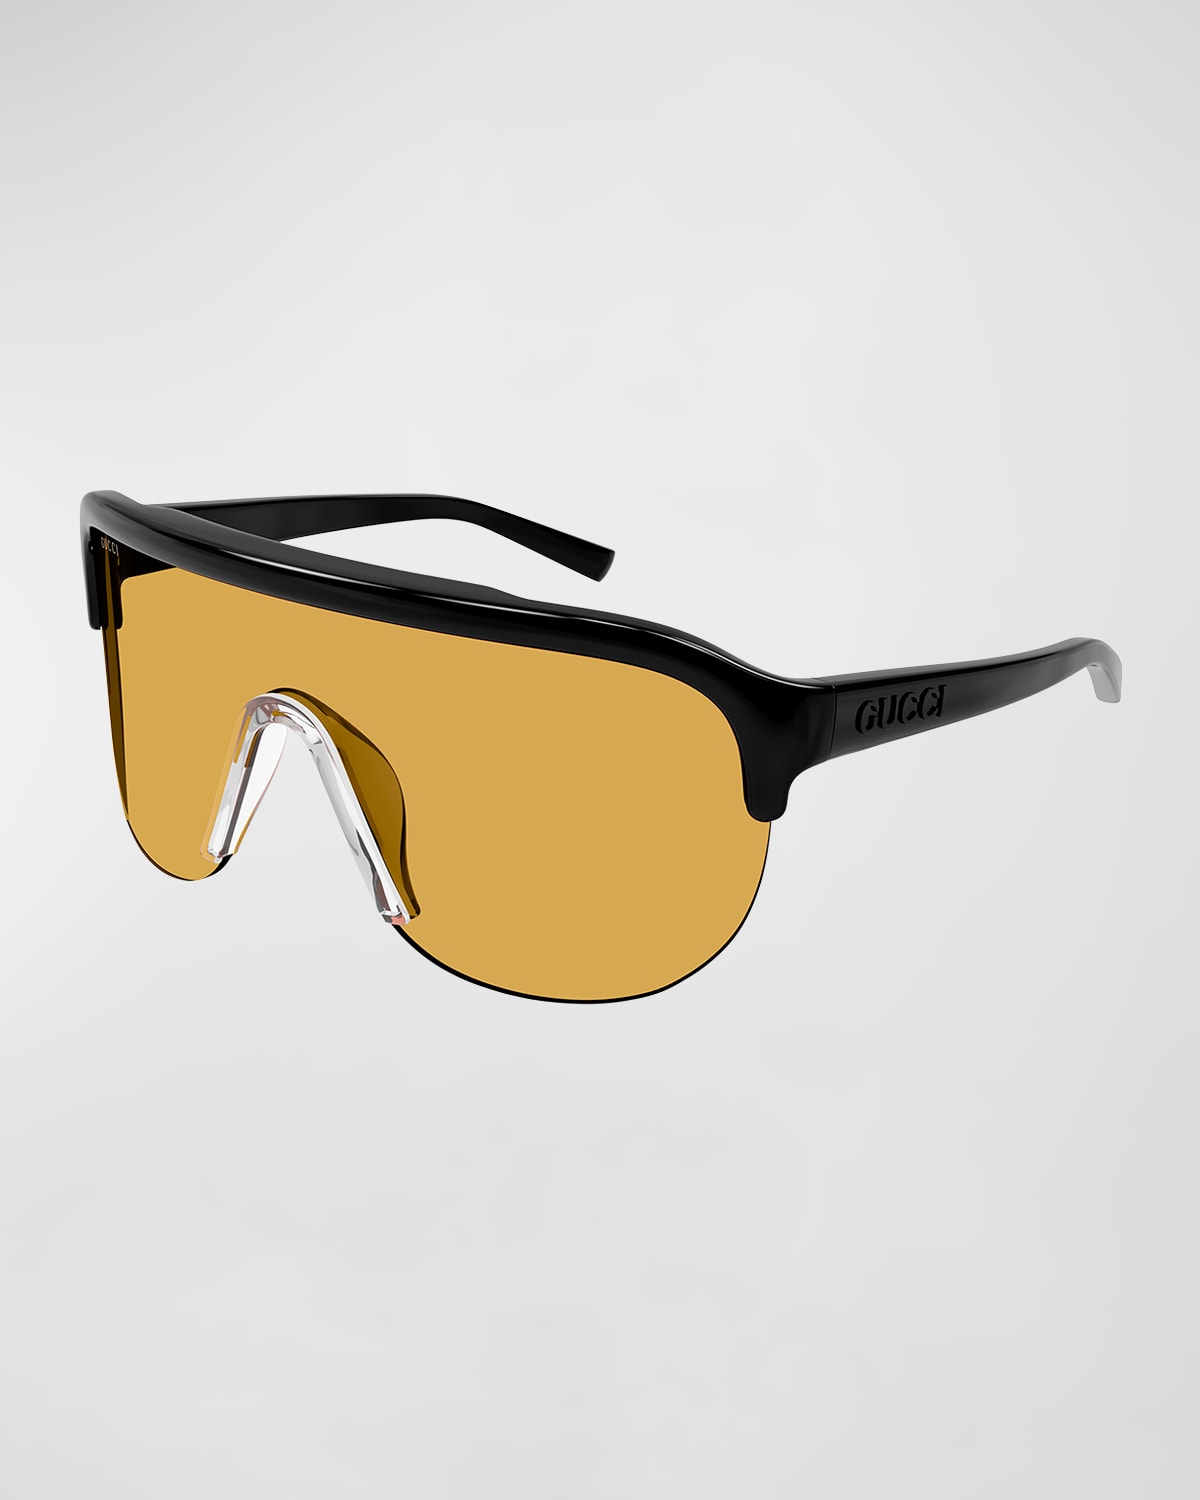 Gucci Men's Oversized Acetate Shield Sunglasses In 005 Shiny Black